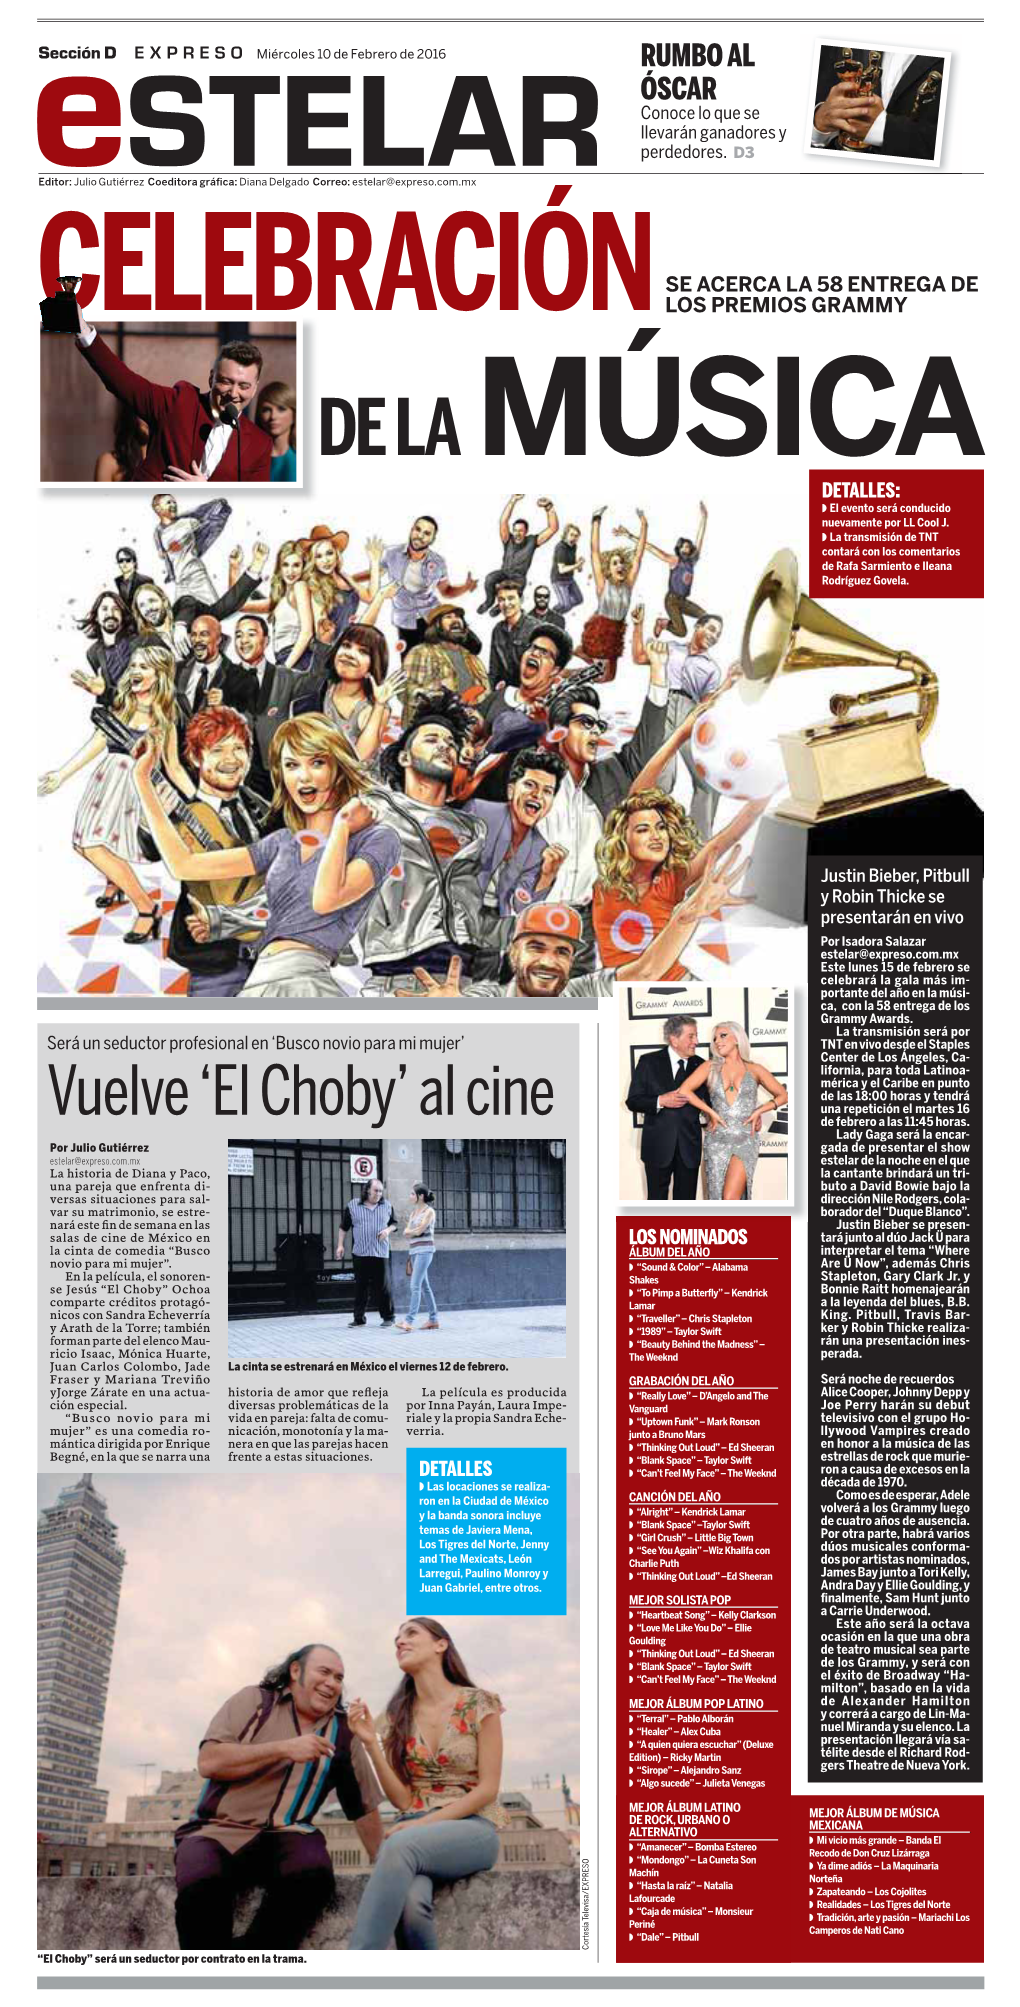 Vuelve 'El Choby' Al Cine